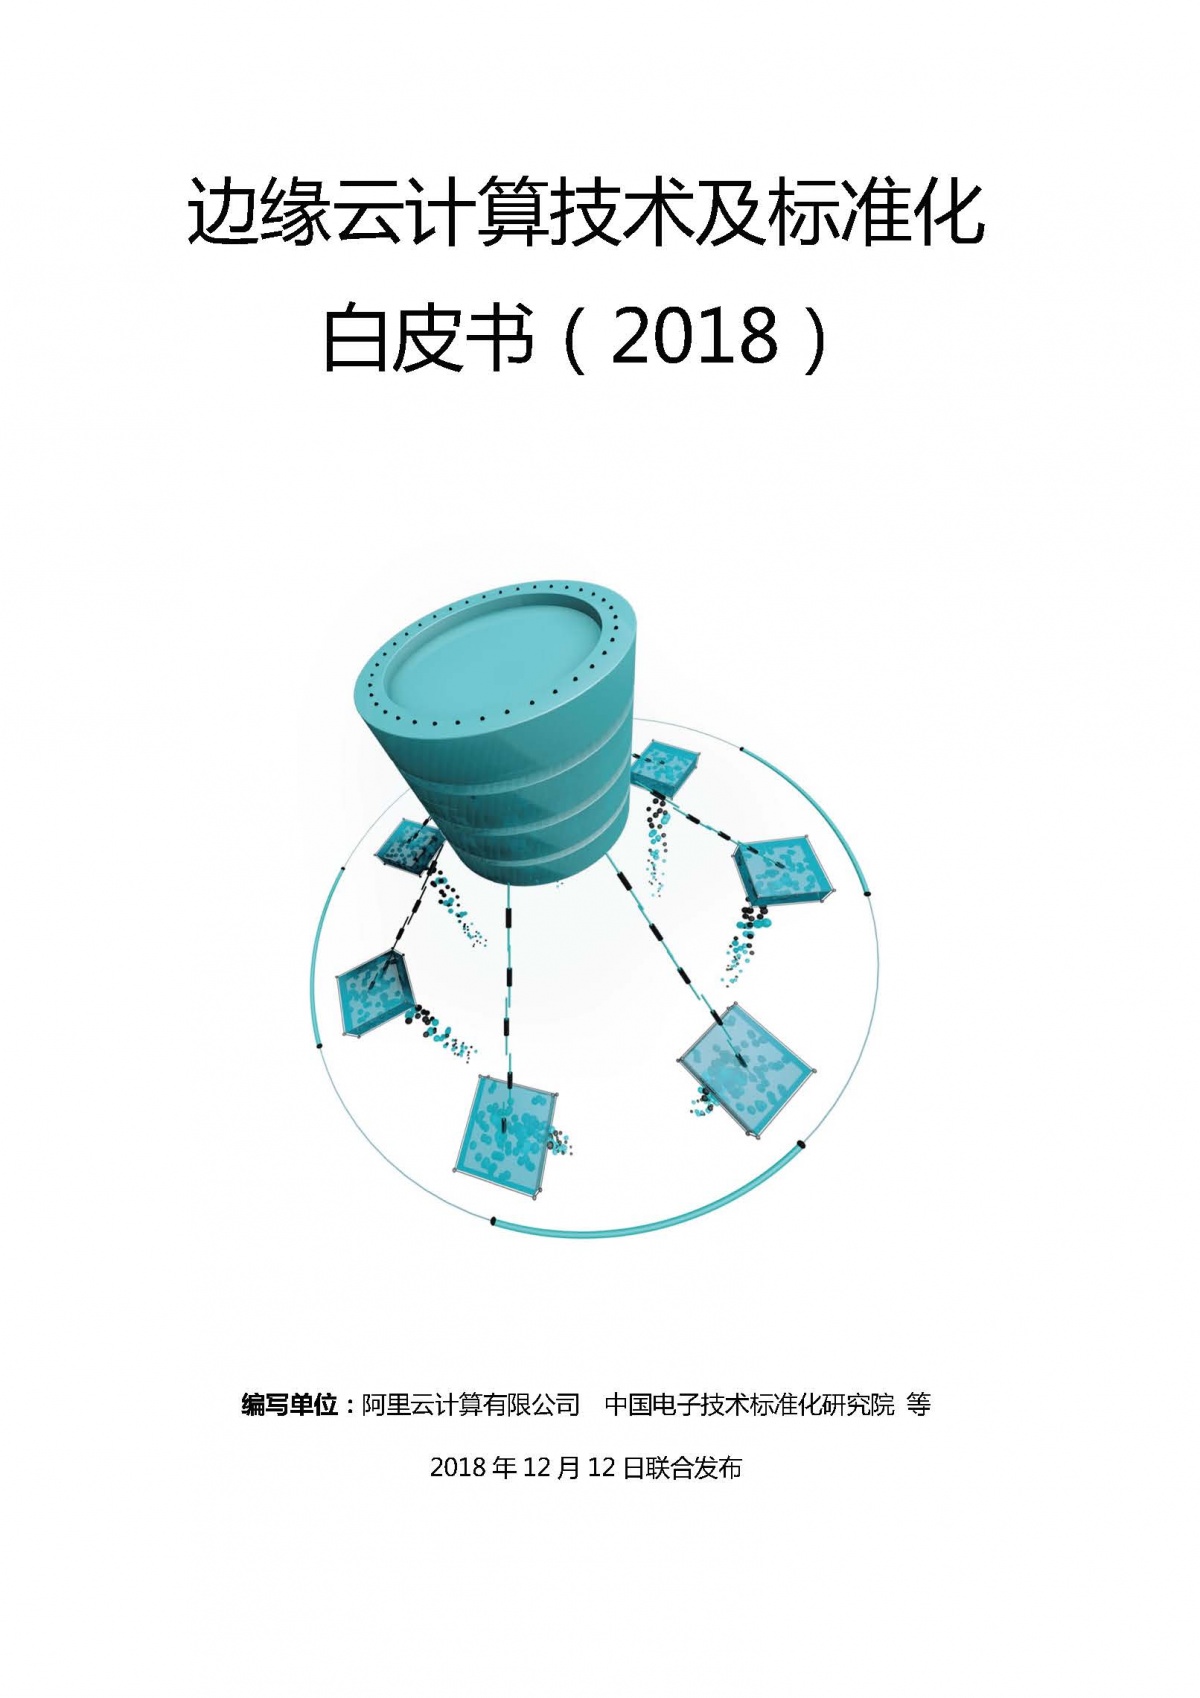 20190118边缘云计算技术及标准化白皮书_页面_01.jpg